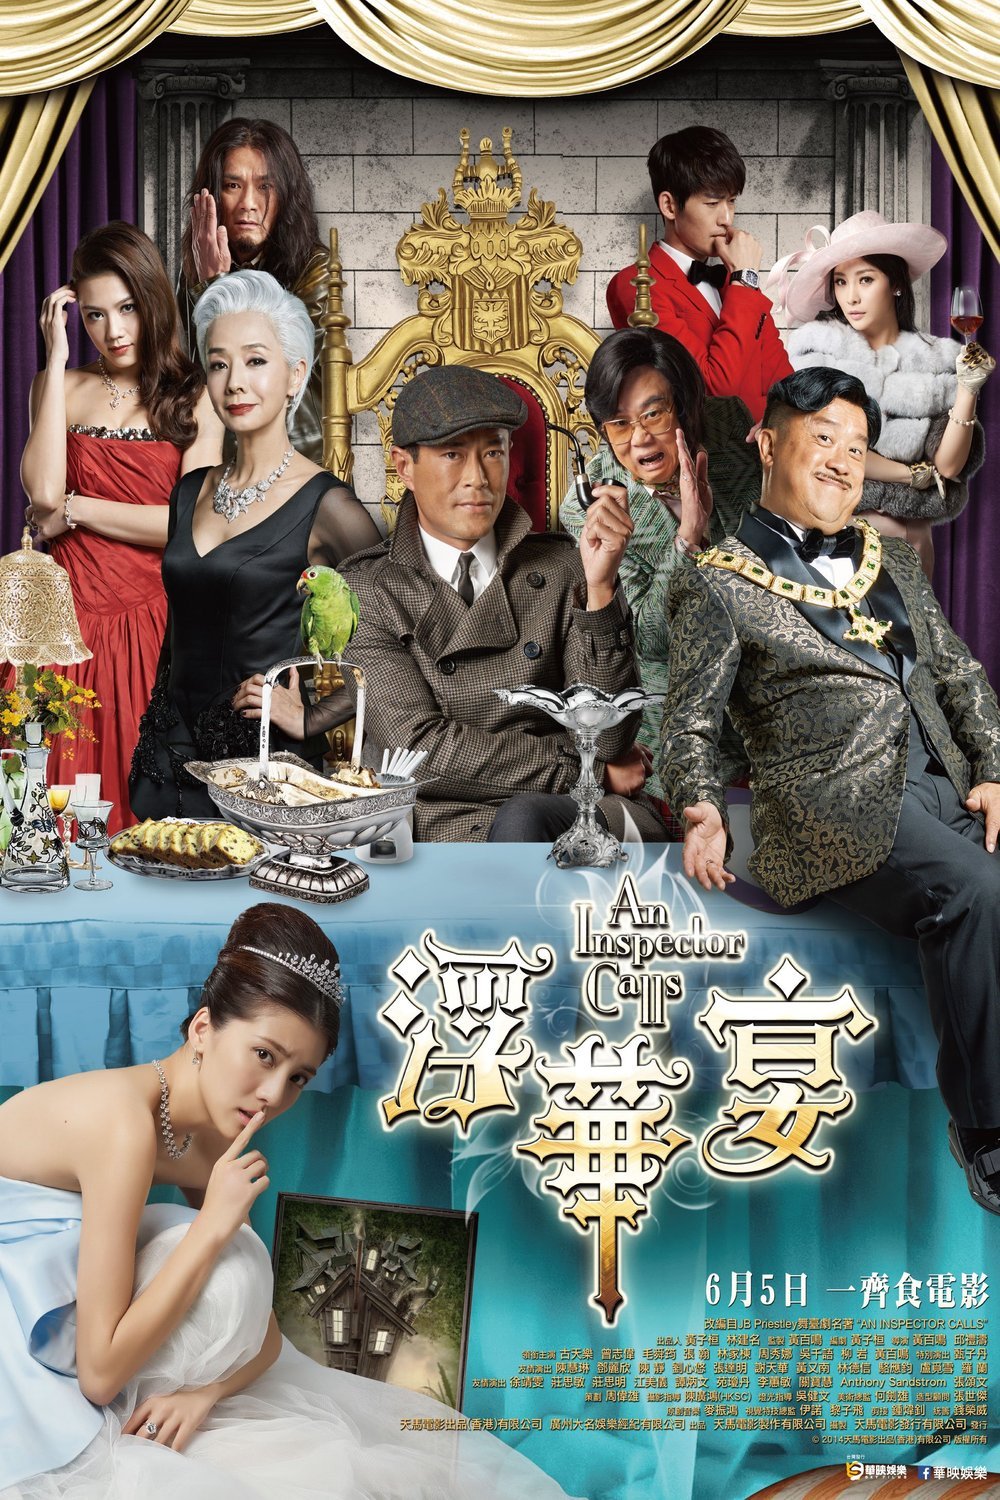 L'affiche originale du film Fau wa yin en Cantonais